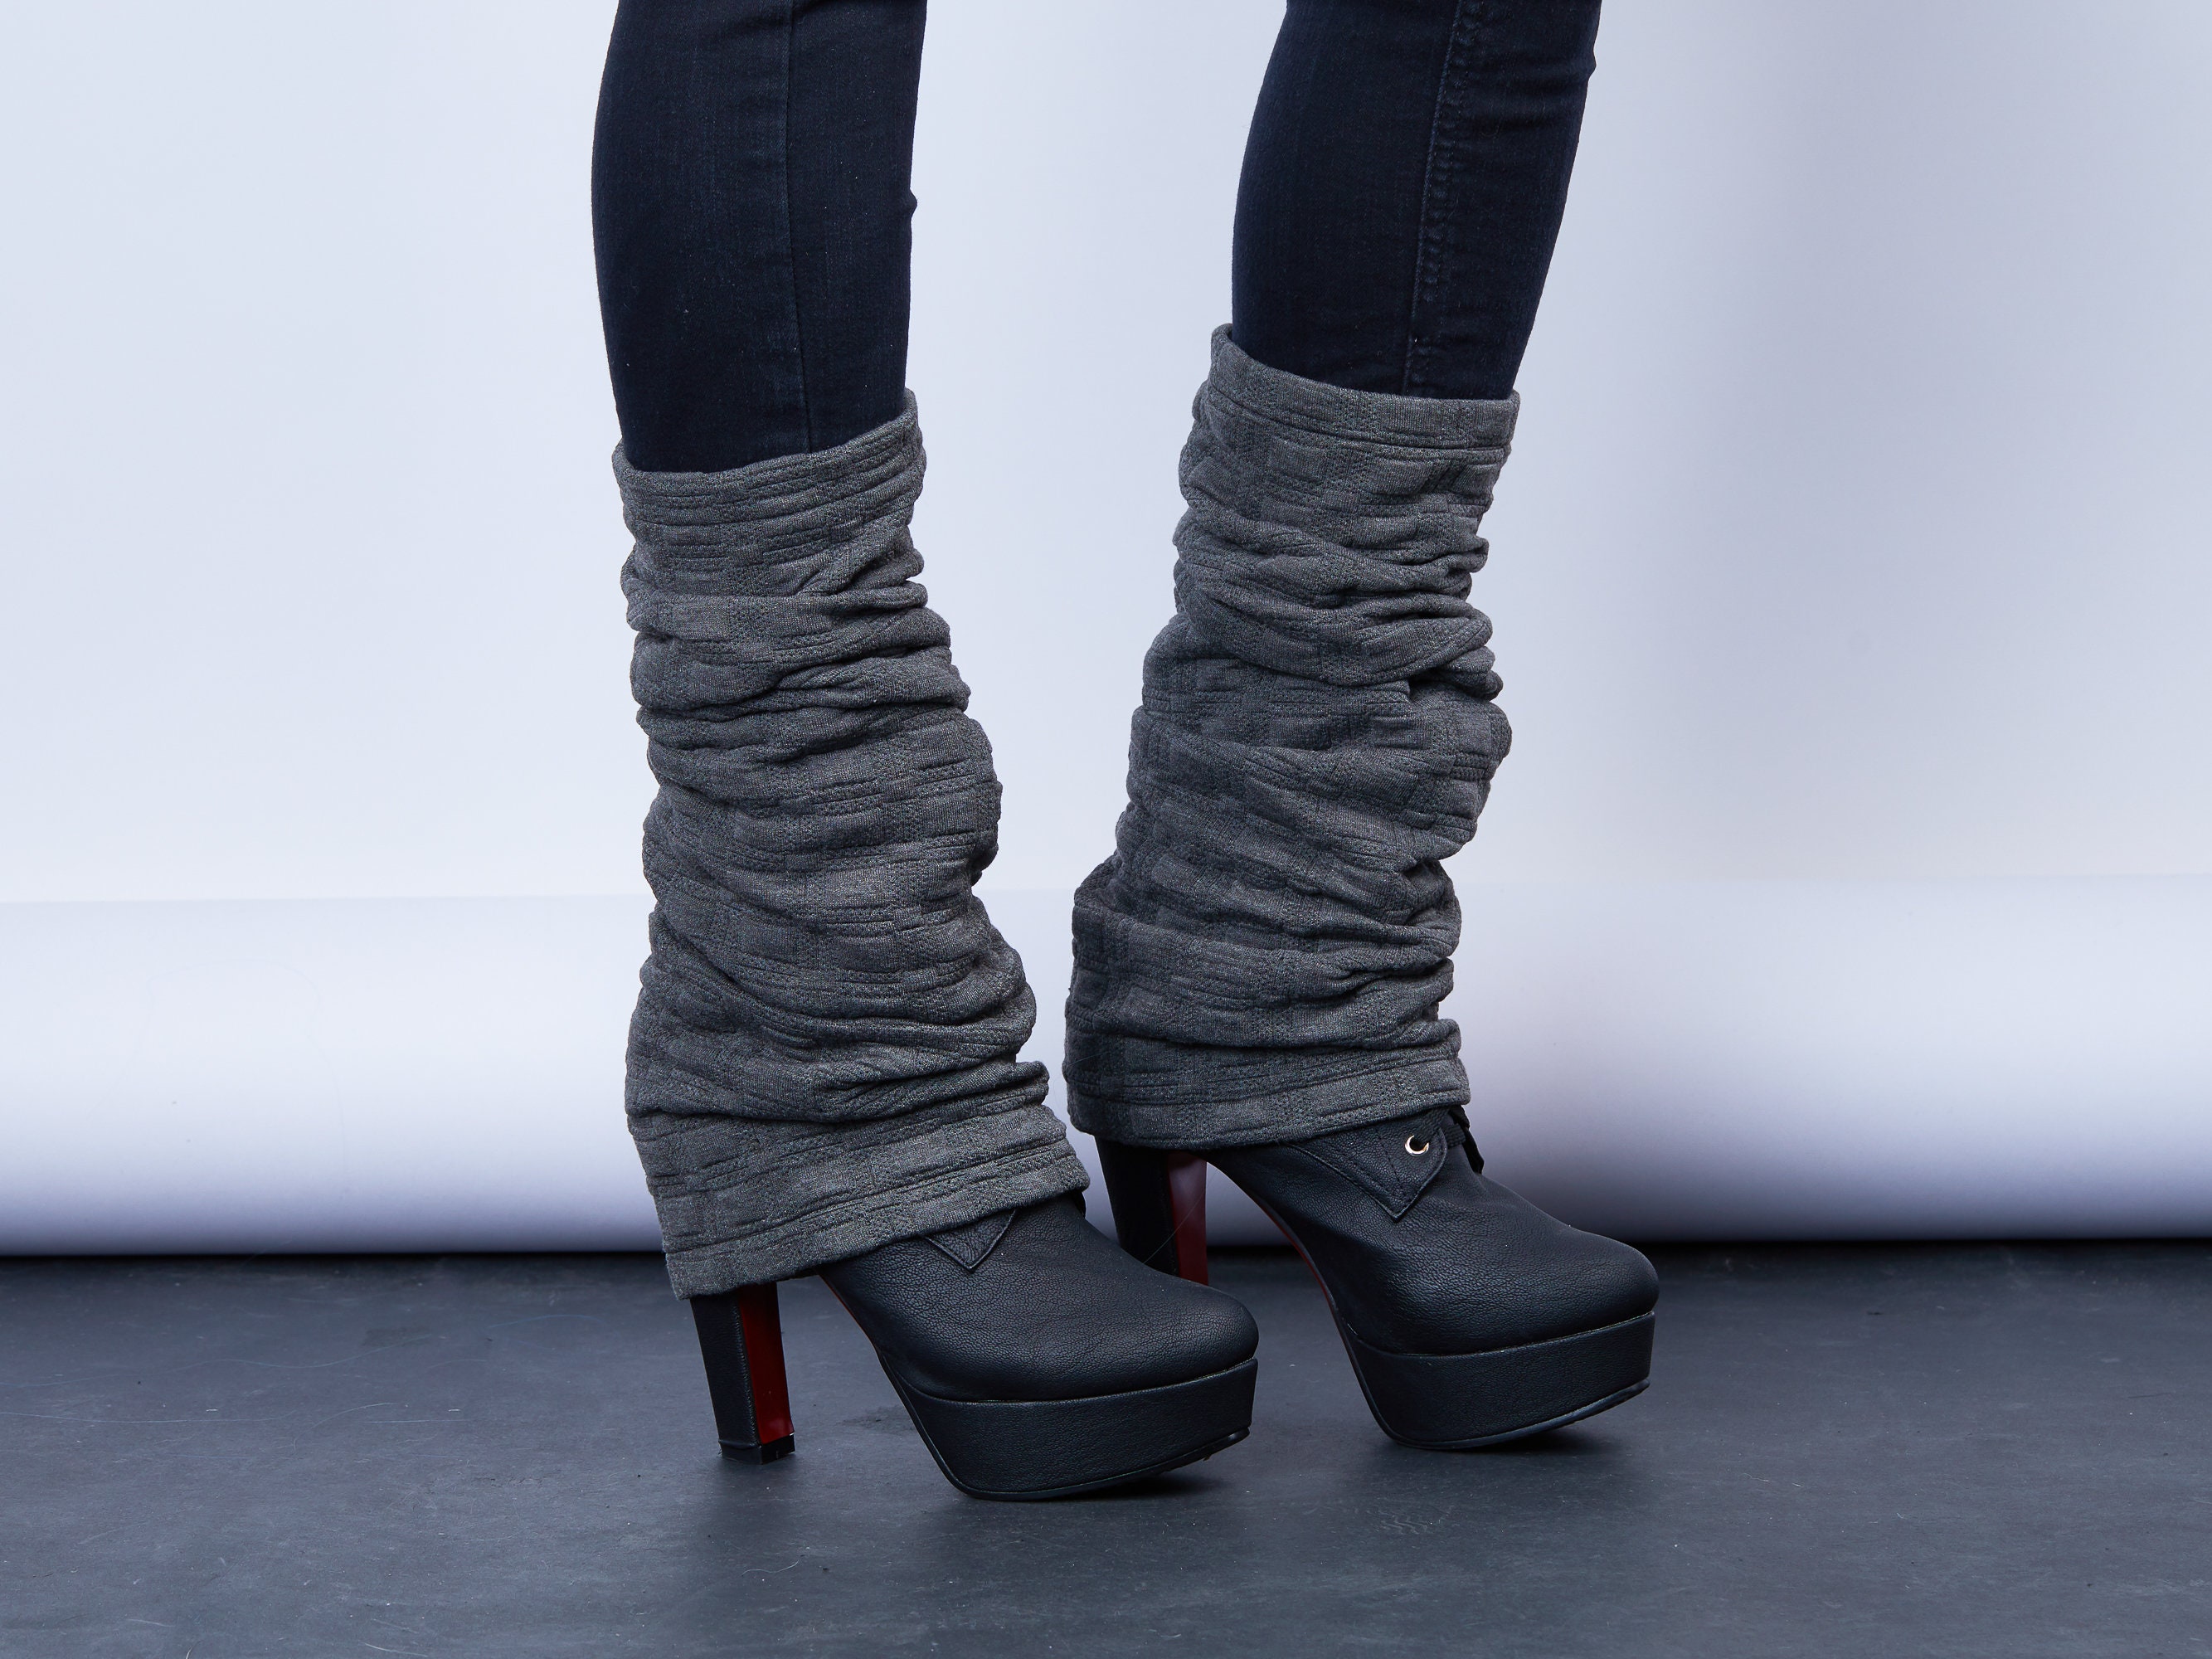 Grey Leg Warmers Gray Boot Socks LG Sq 